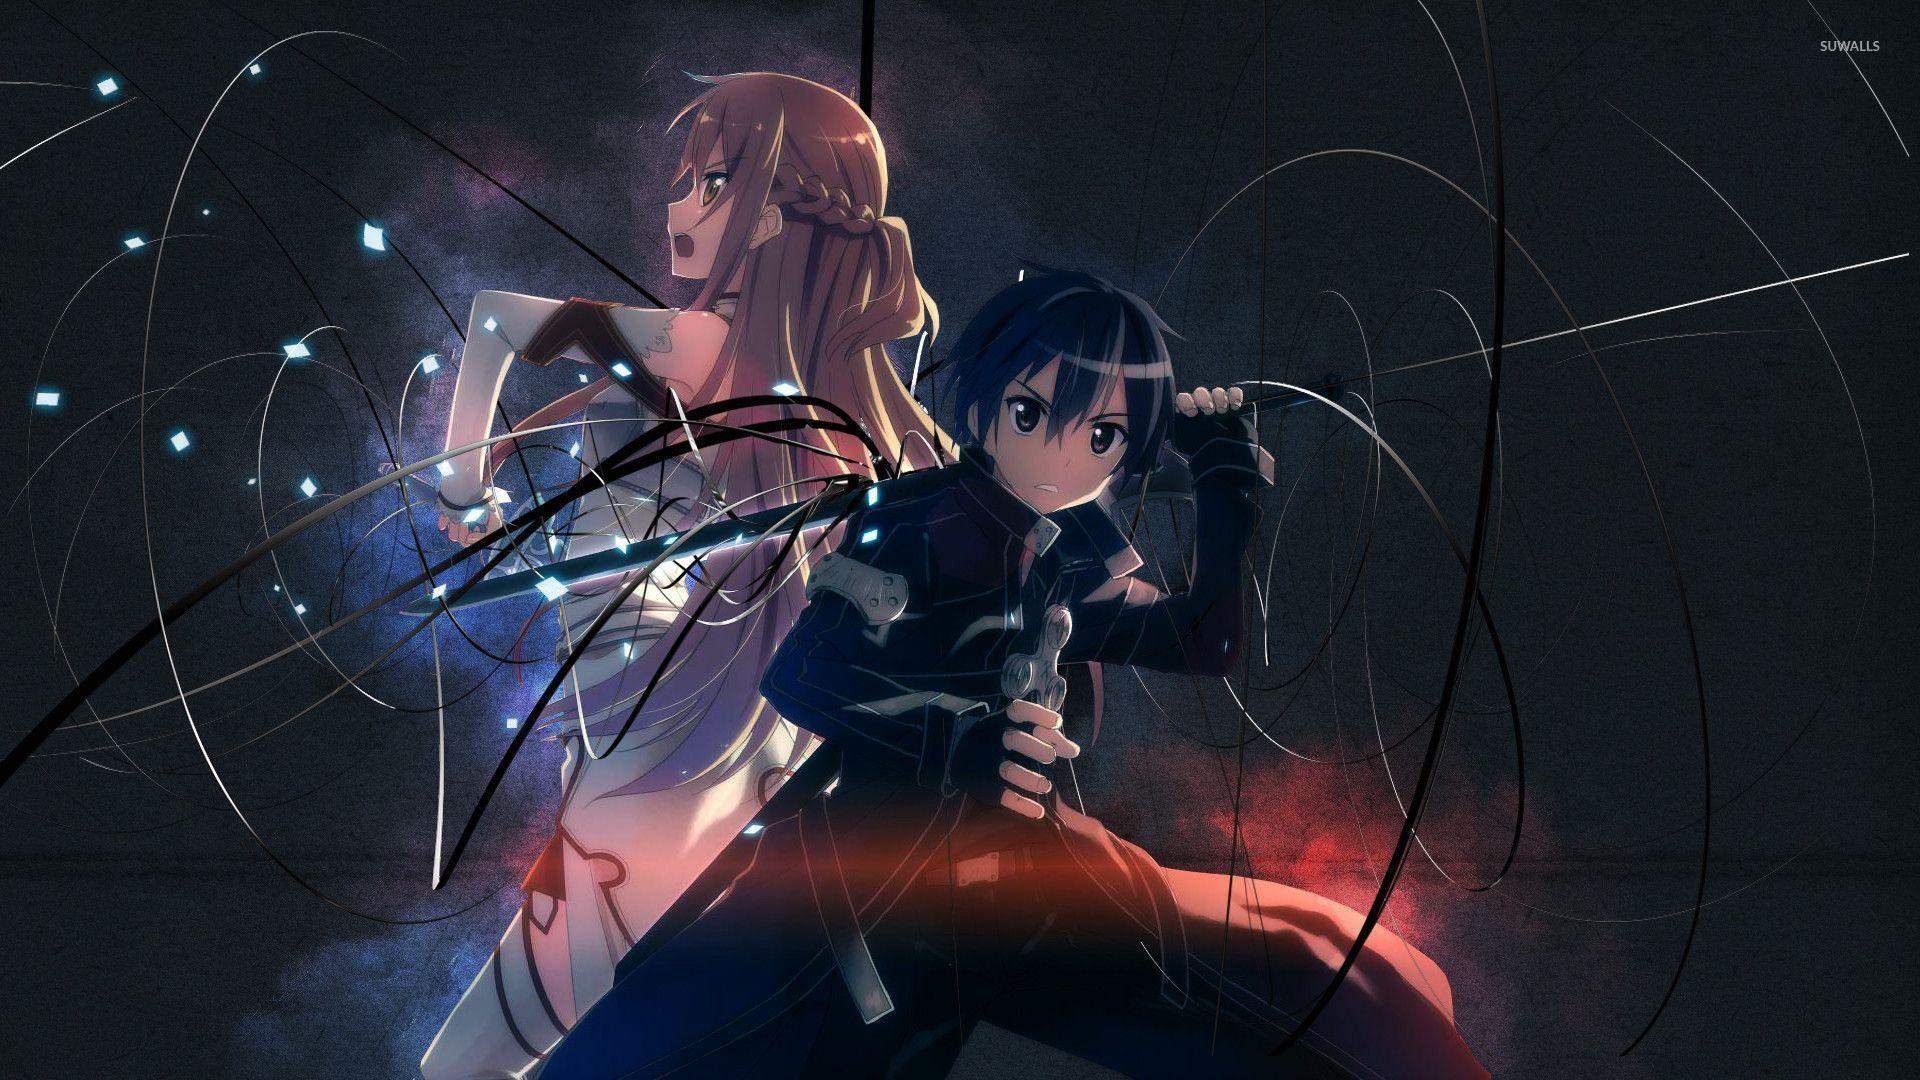 1920x1080 Asuna và Kirito - Hình nền Sword Art Online - Anime